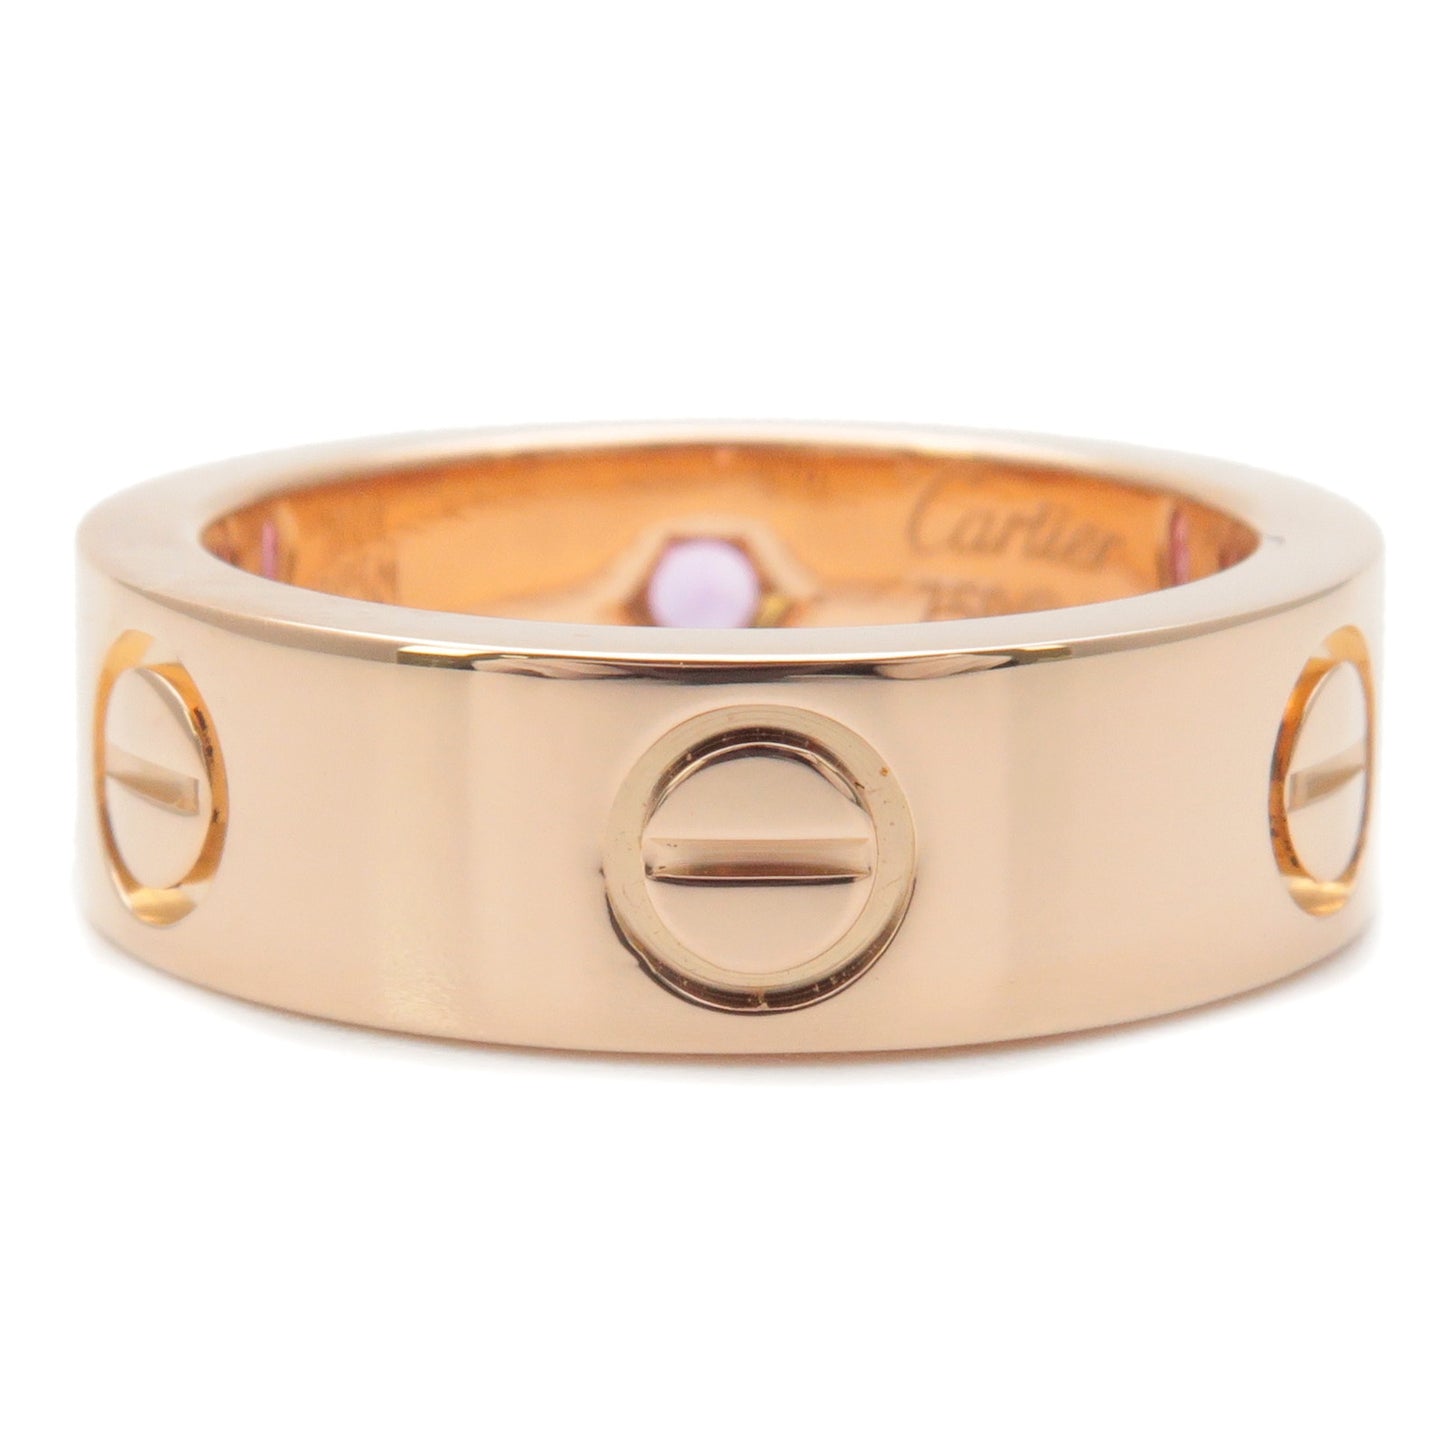 Cartier Love Ring 1P Pink Sapphire Rose Gold #49 US5 EU49